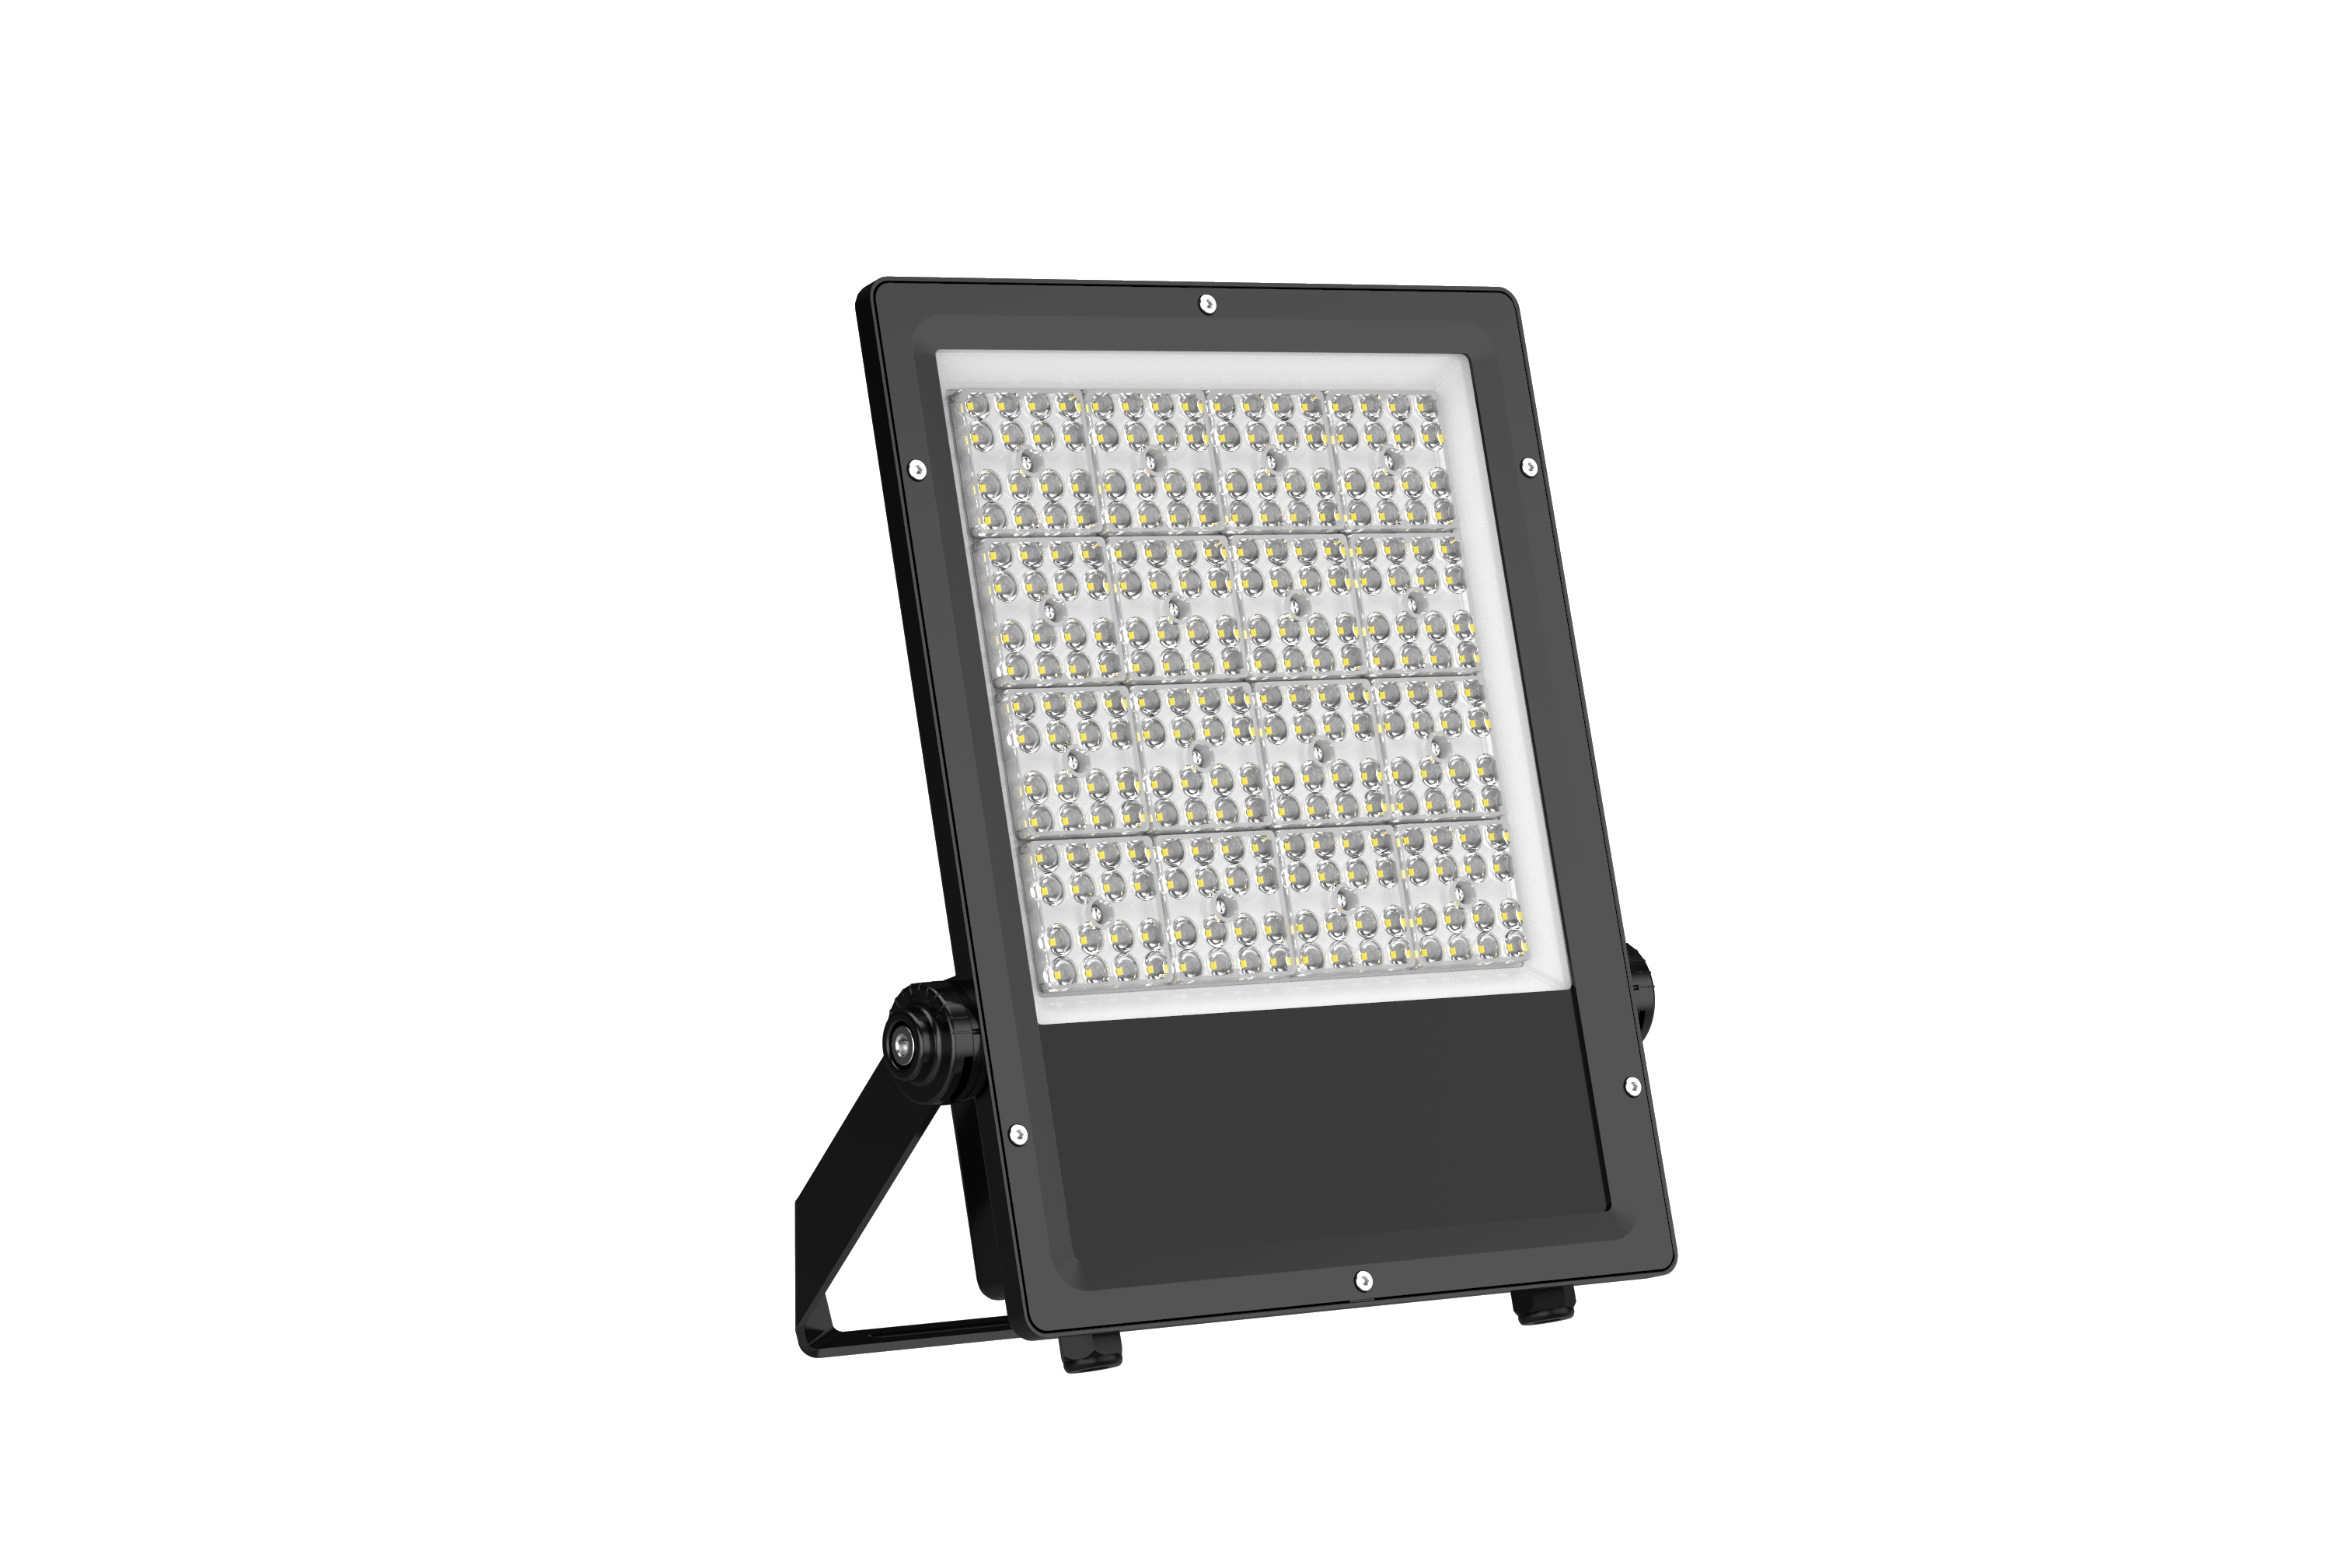 AT-F08 LED Flood Lights 30-400Watt projector light 1-10v dimmable